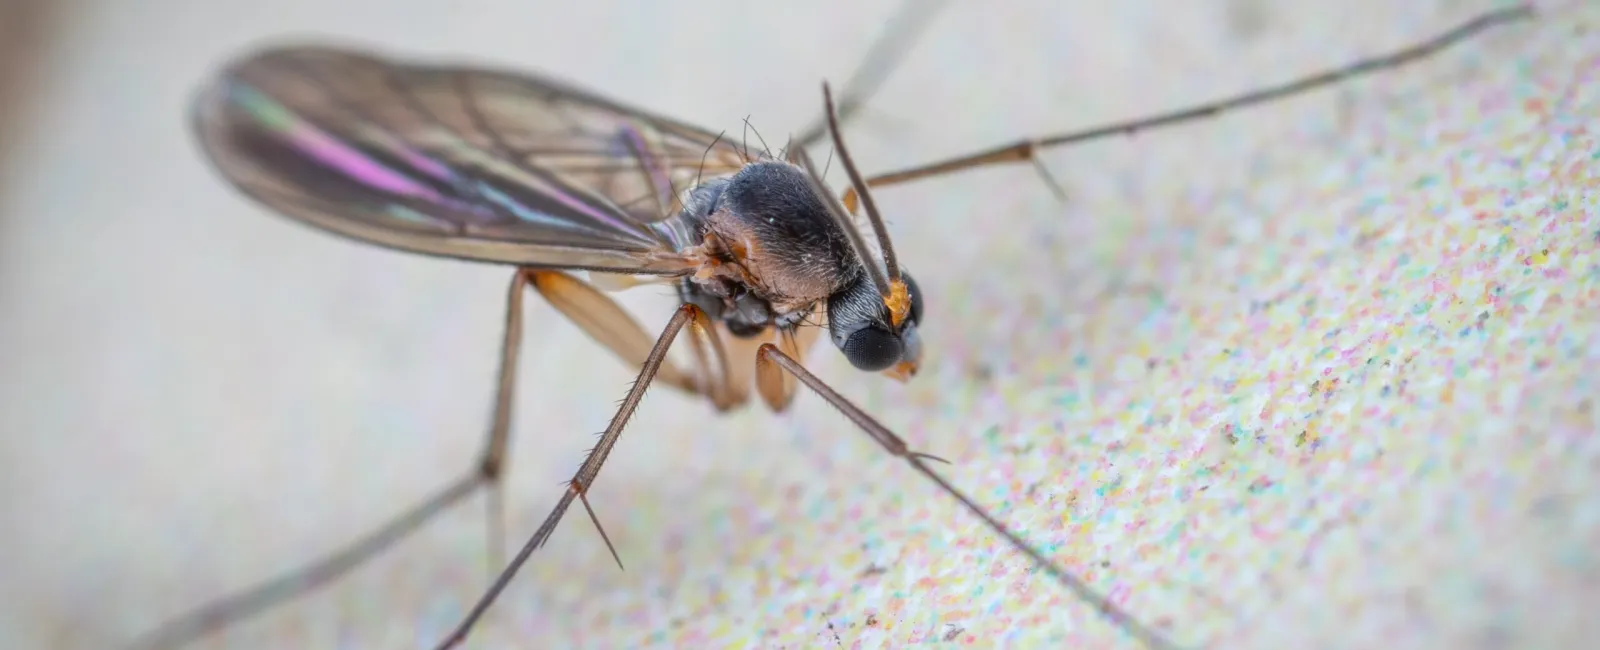 a closeup of a gnat